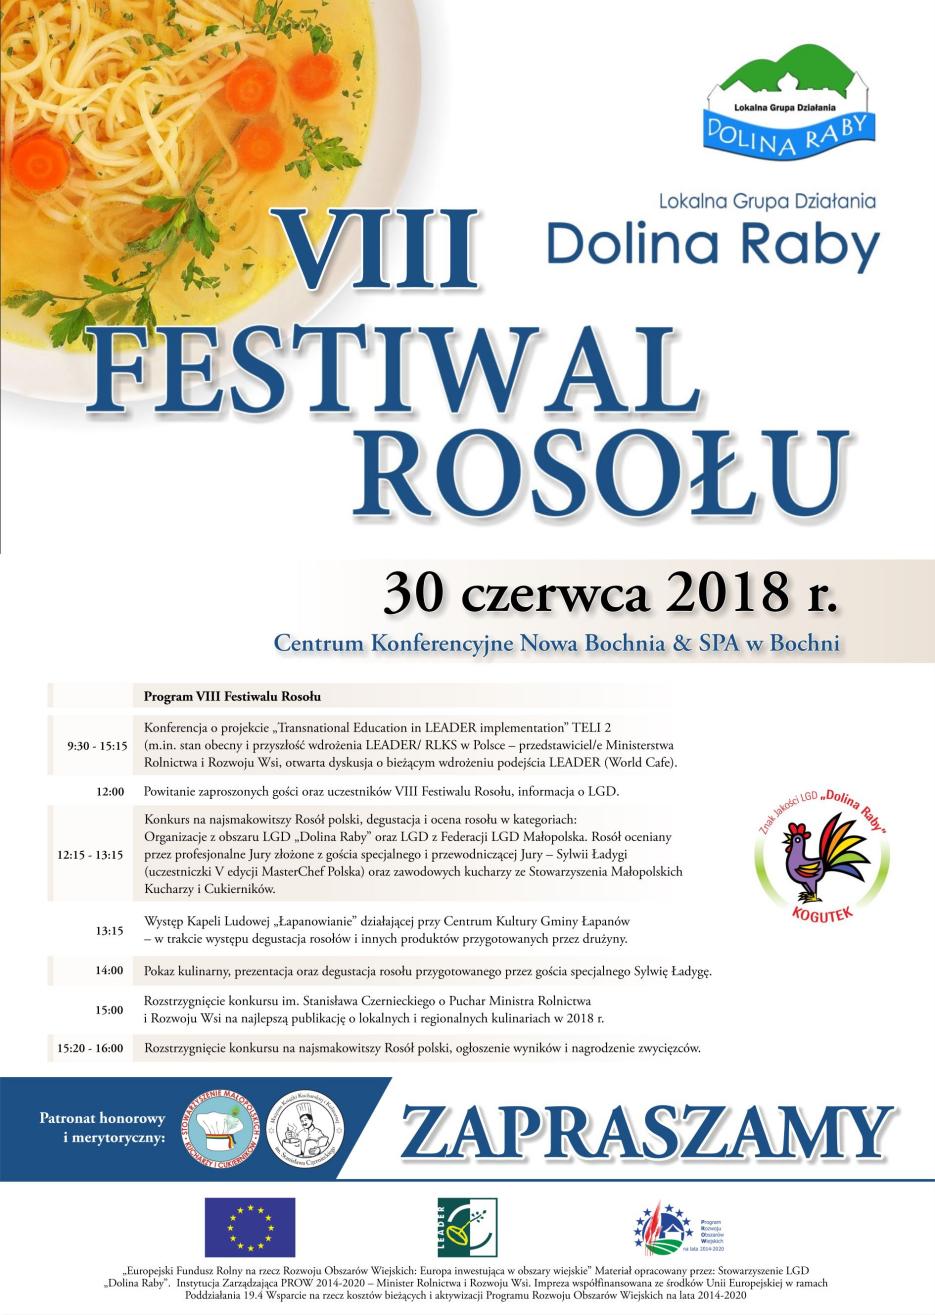 Zaproszenie na VIII Festiwal Rosołu.